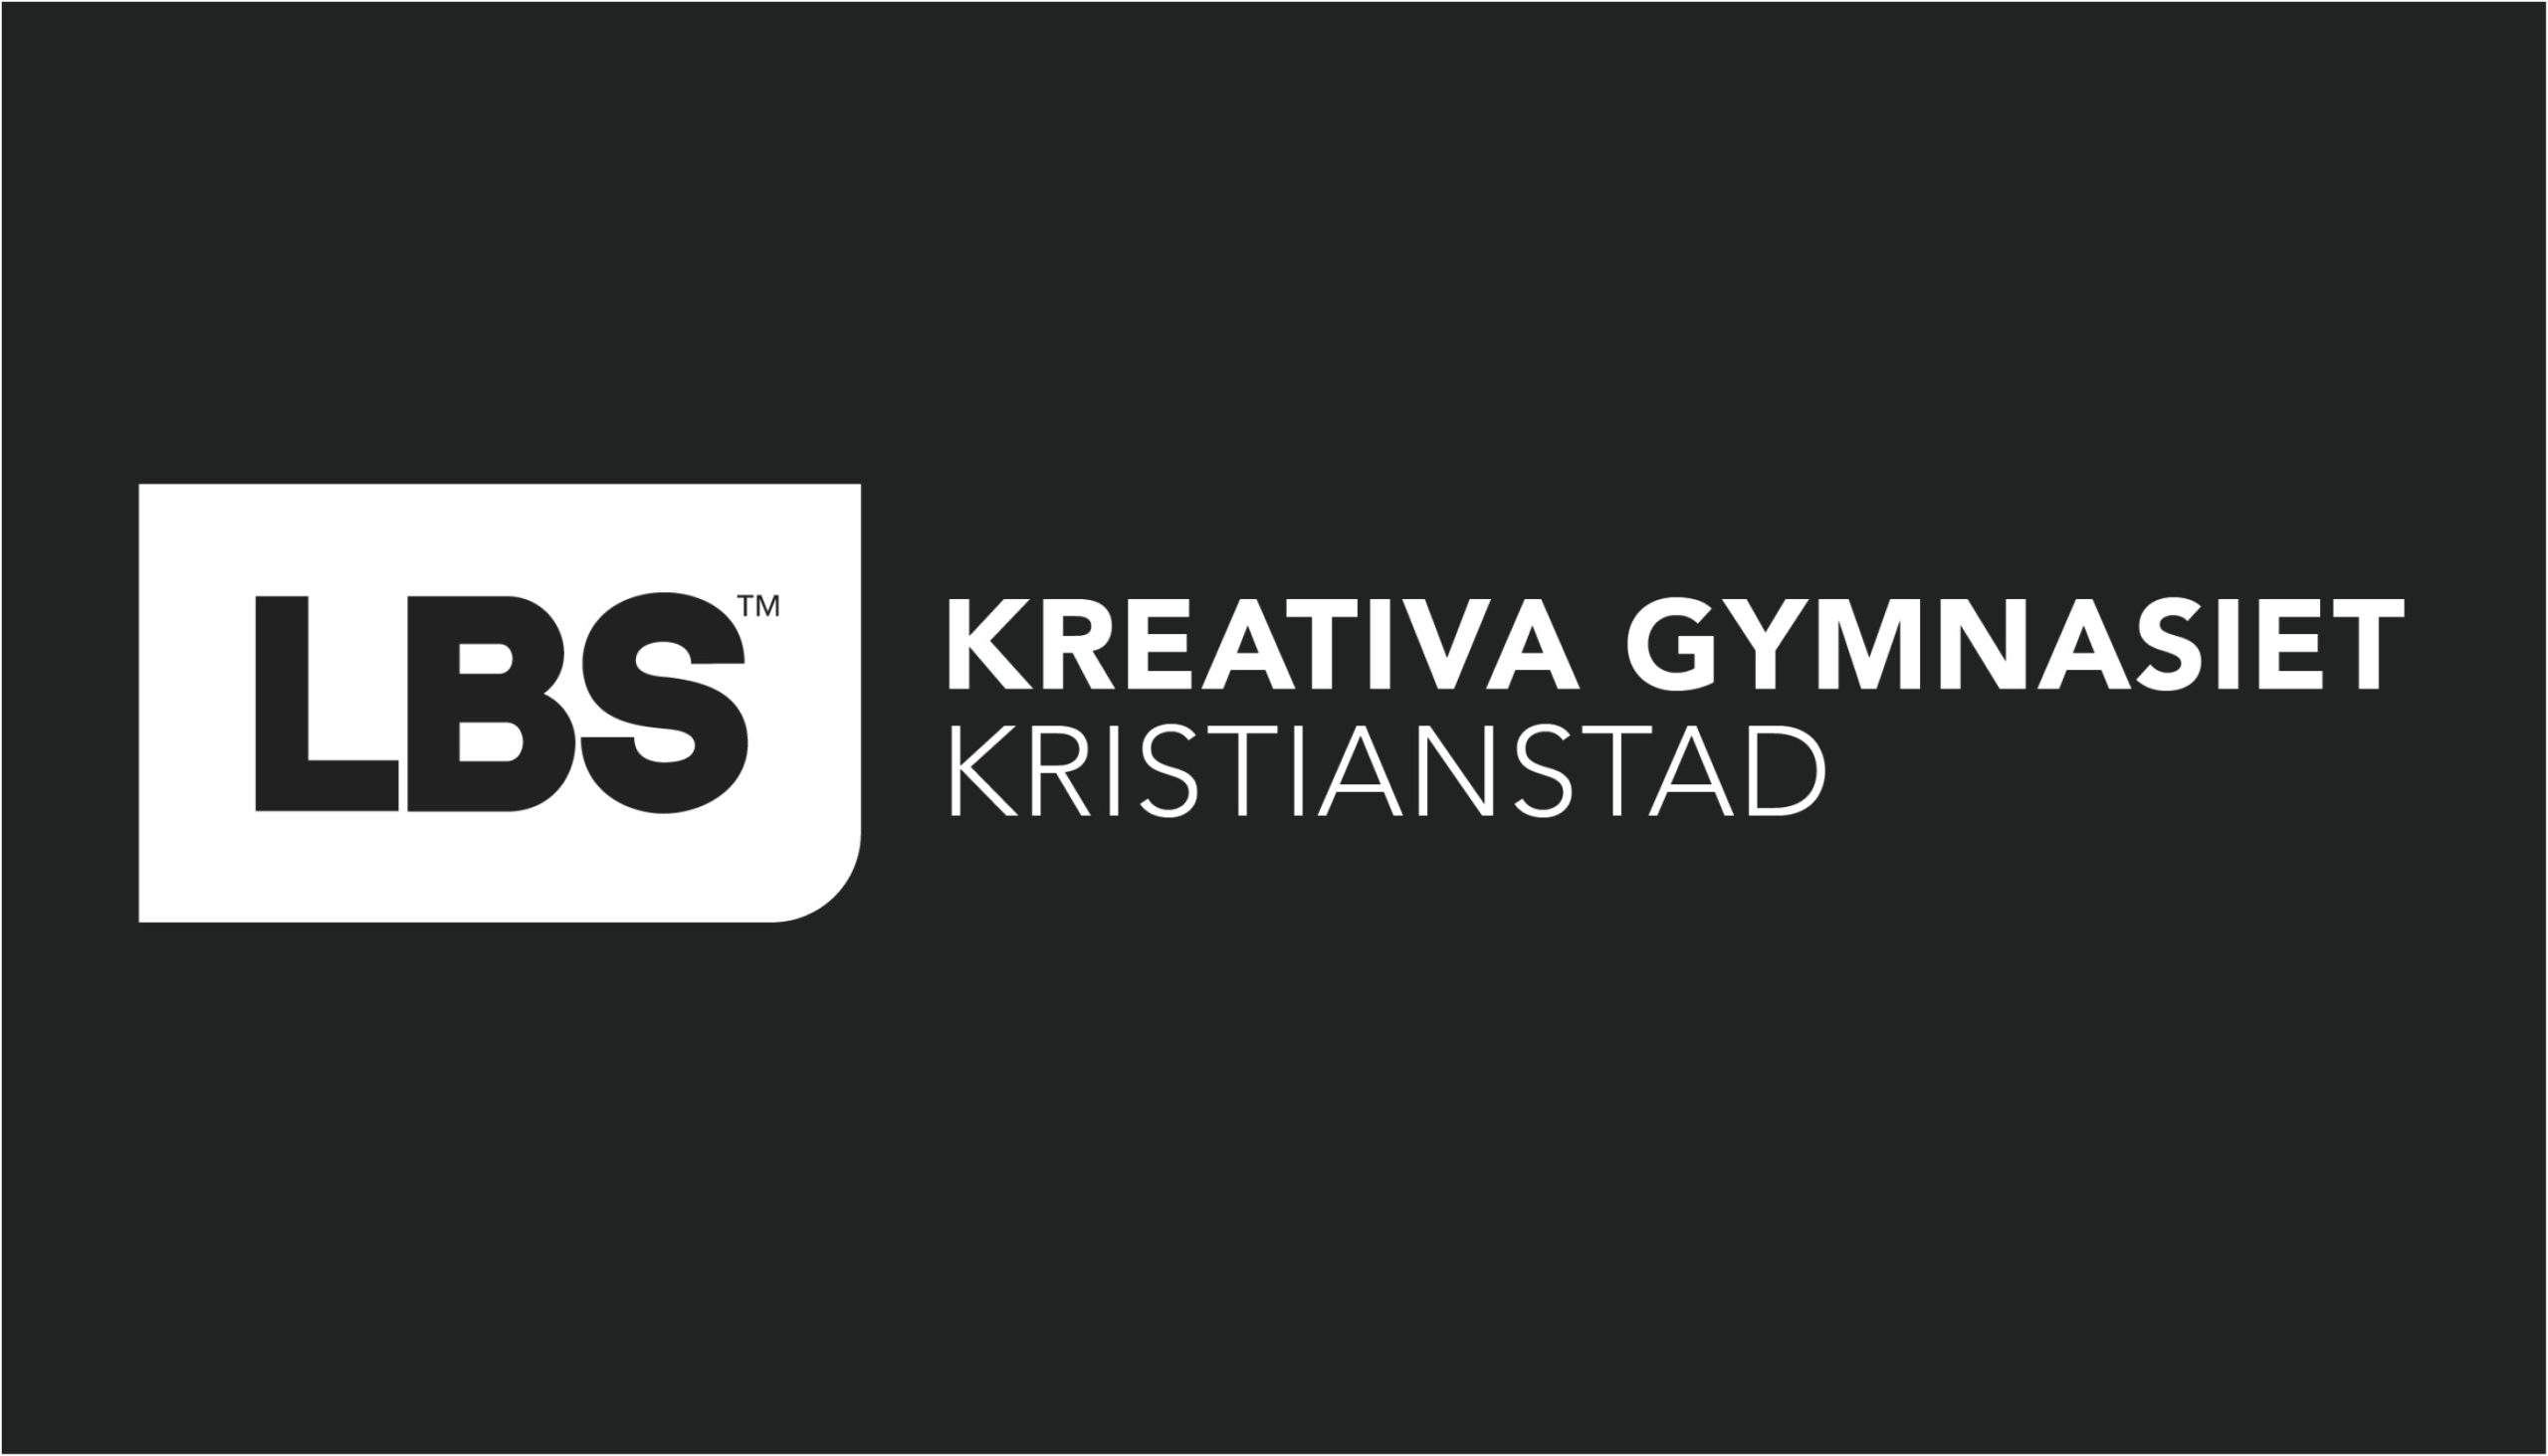 LBS Kristianstad logga.